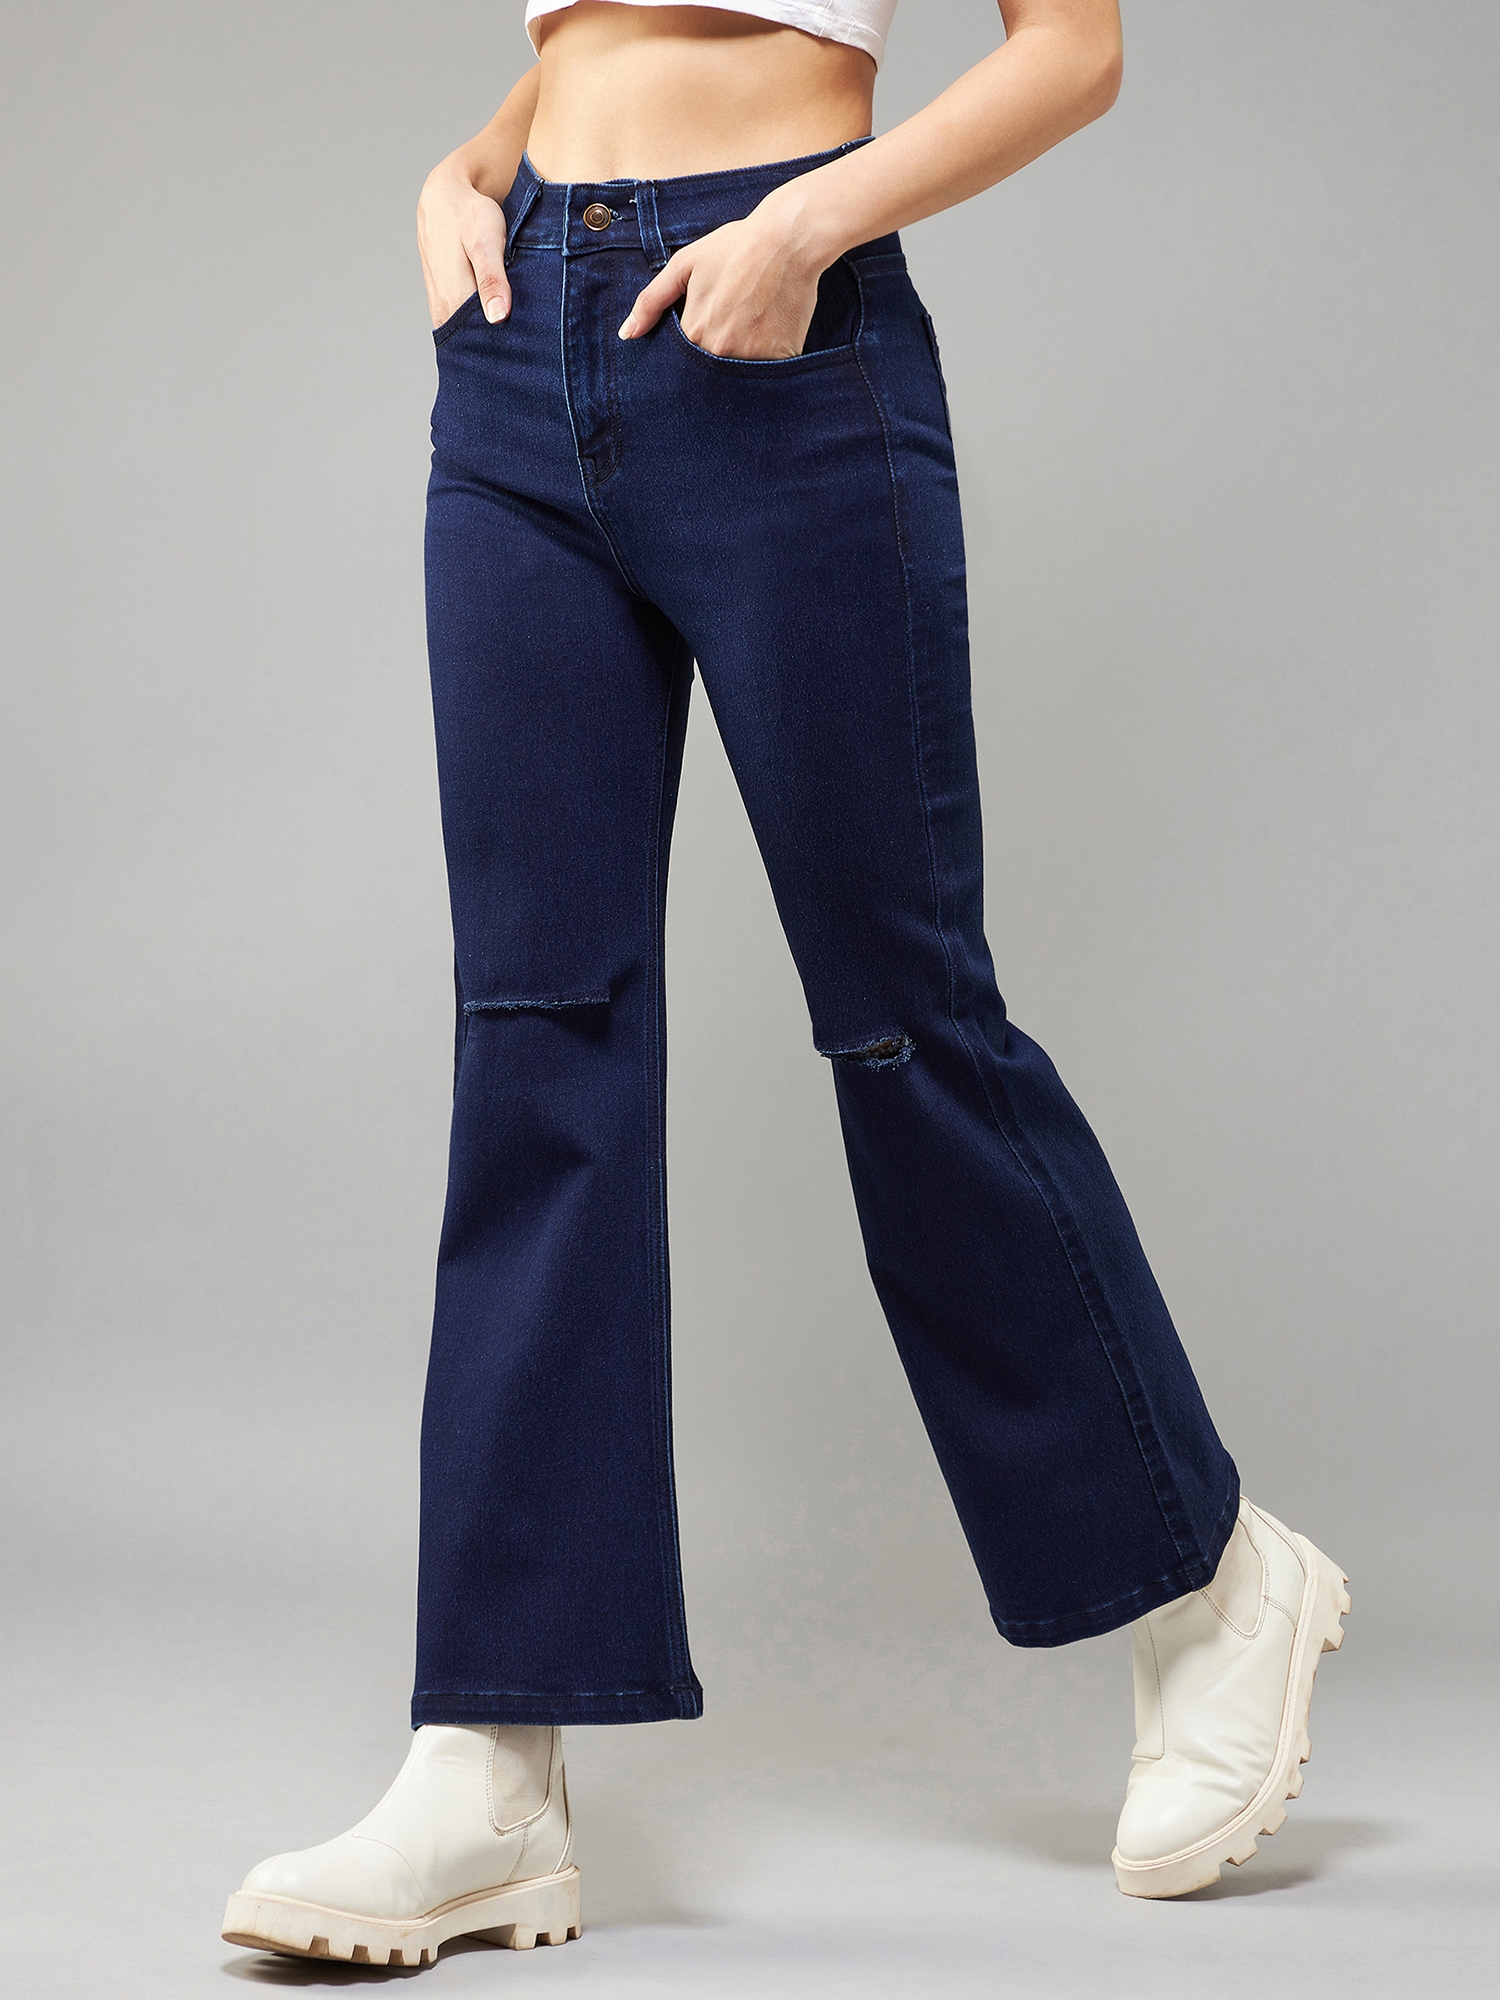 Buy Van Heusen Blue Jeans Online - 794120 | Van Heusen